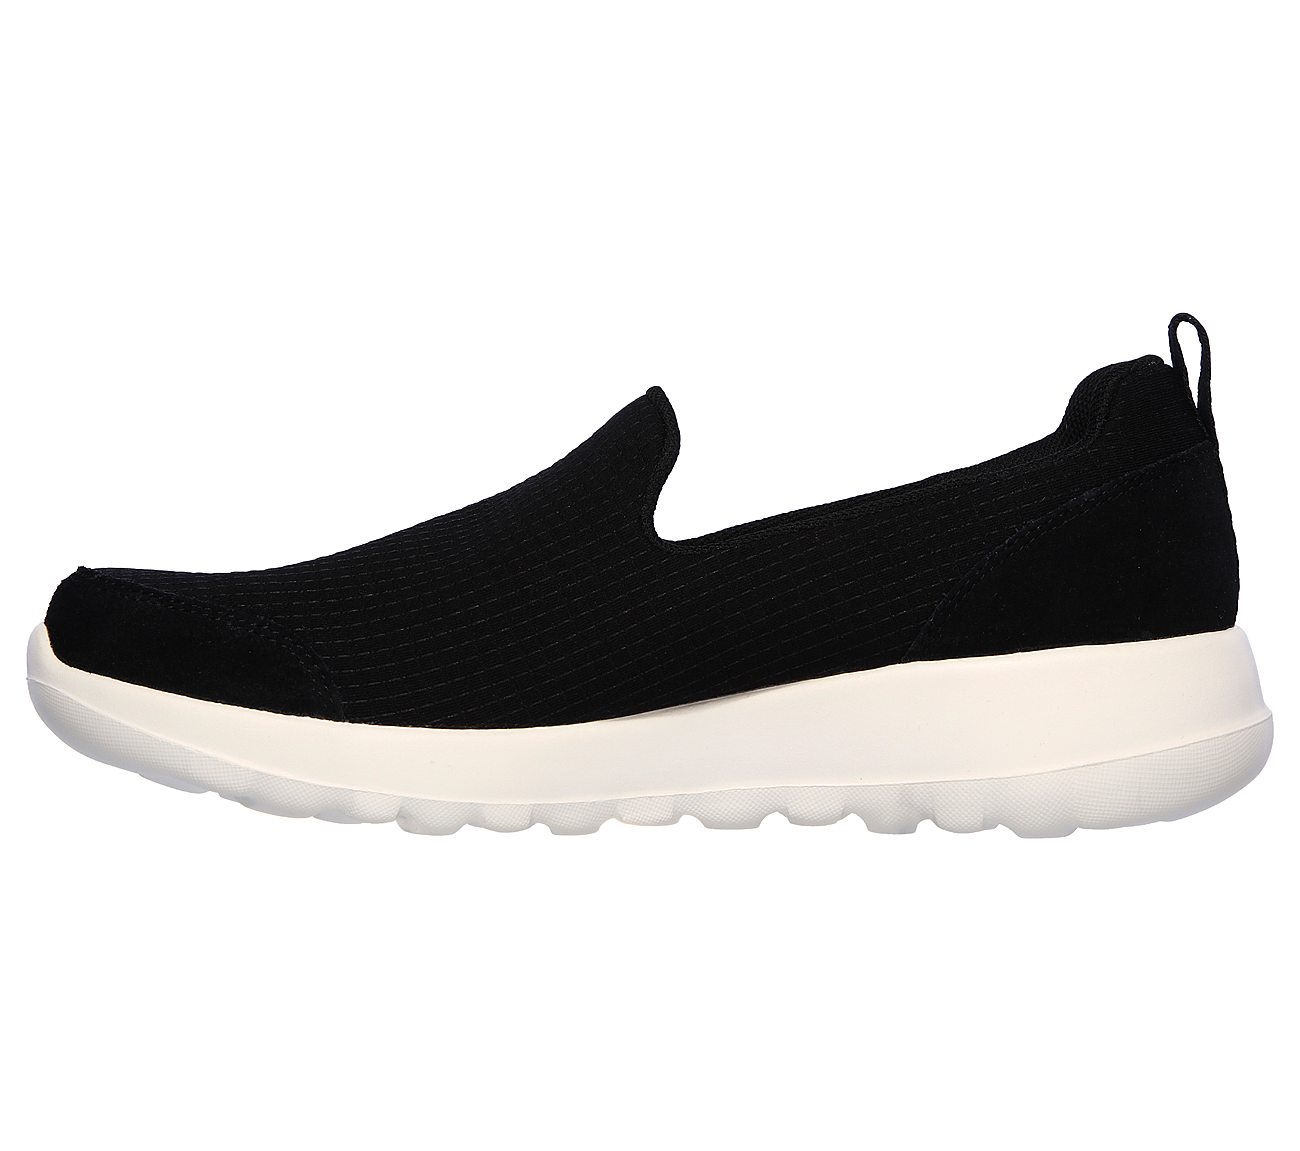 Skechers Black/White Go Walk Joy Daring Slip On Shoes For Women - Style ...